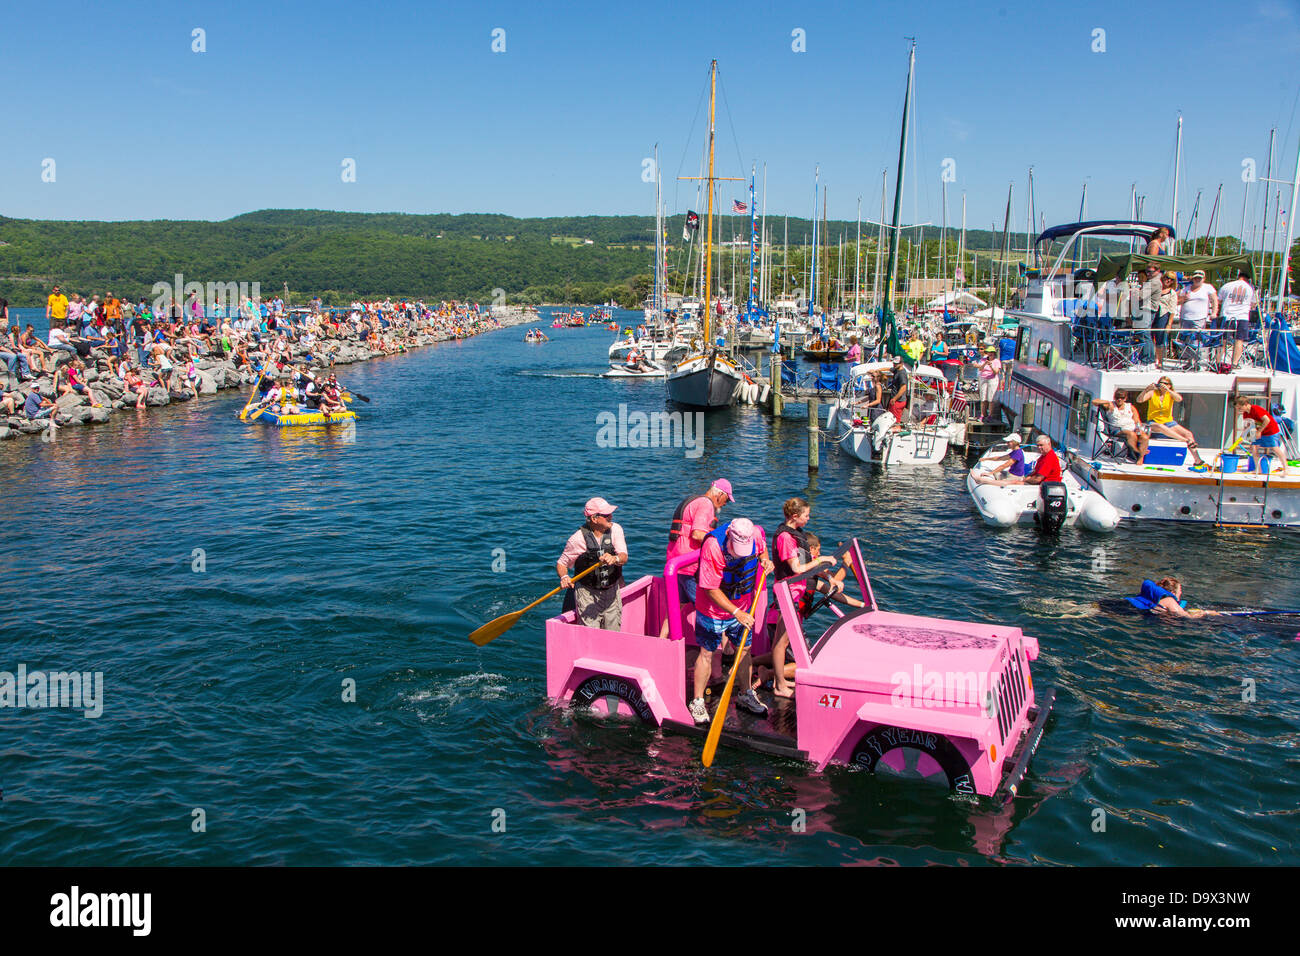 20. jährlichen Watkins Glen Waterfront Festival & Karton Boat Regatta statt im Hafen von Watkins Glen New York Stockfoto